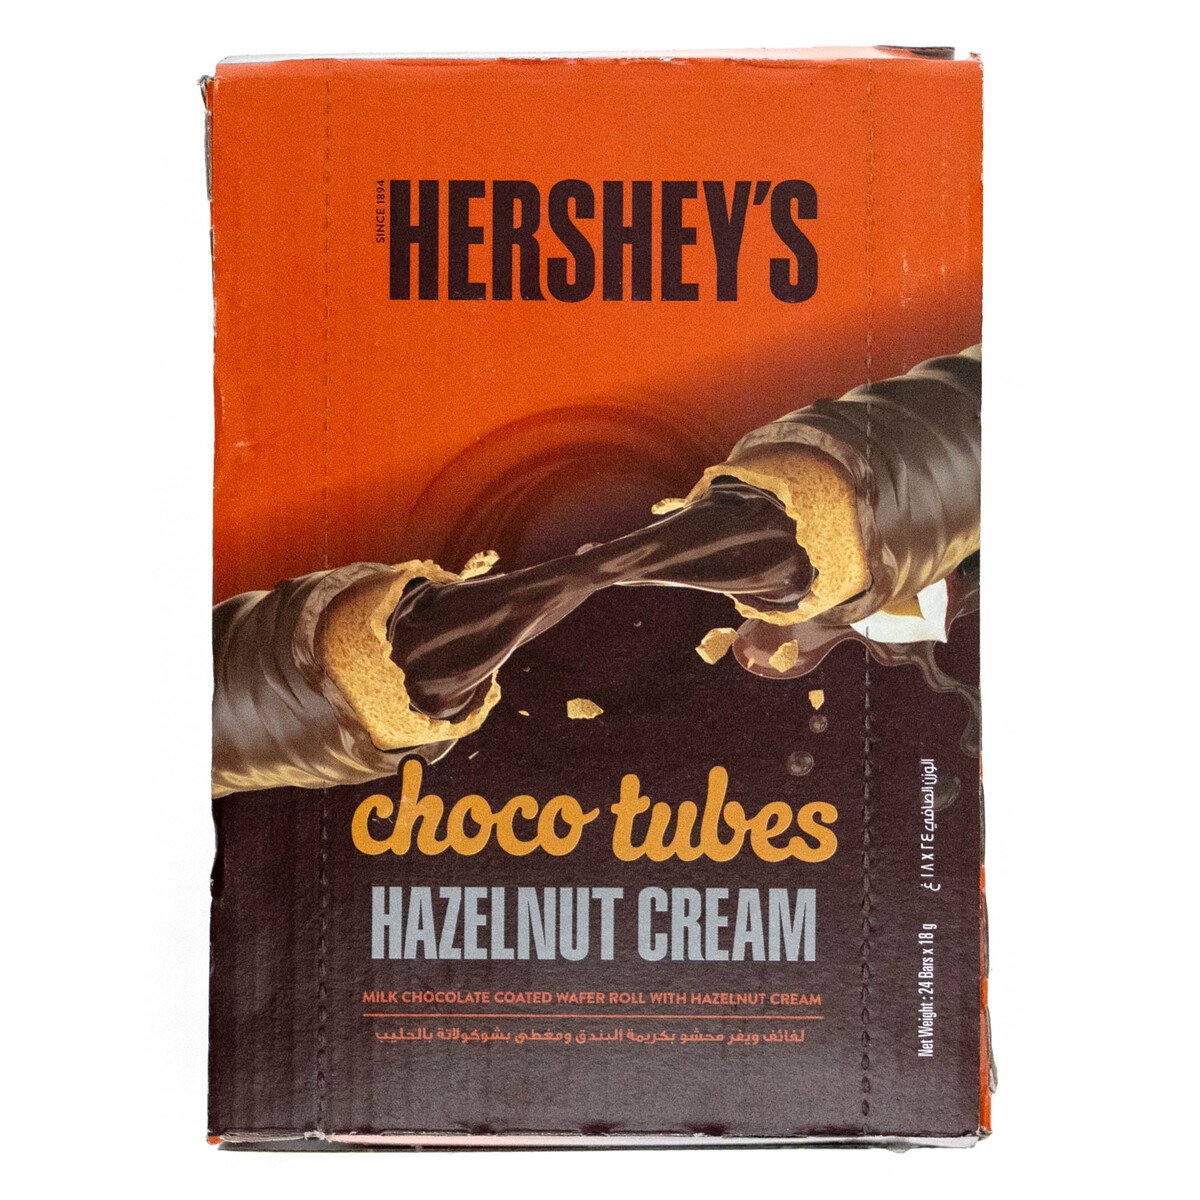 Hershey's Choco Tubes Hazelnut Cream 18 g